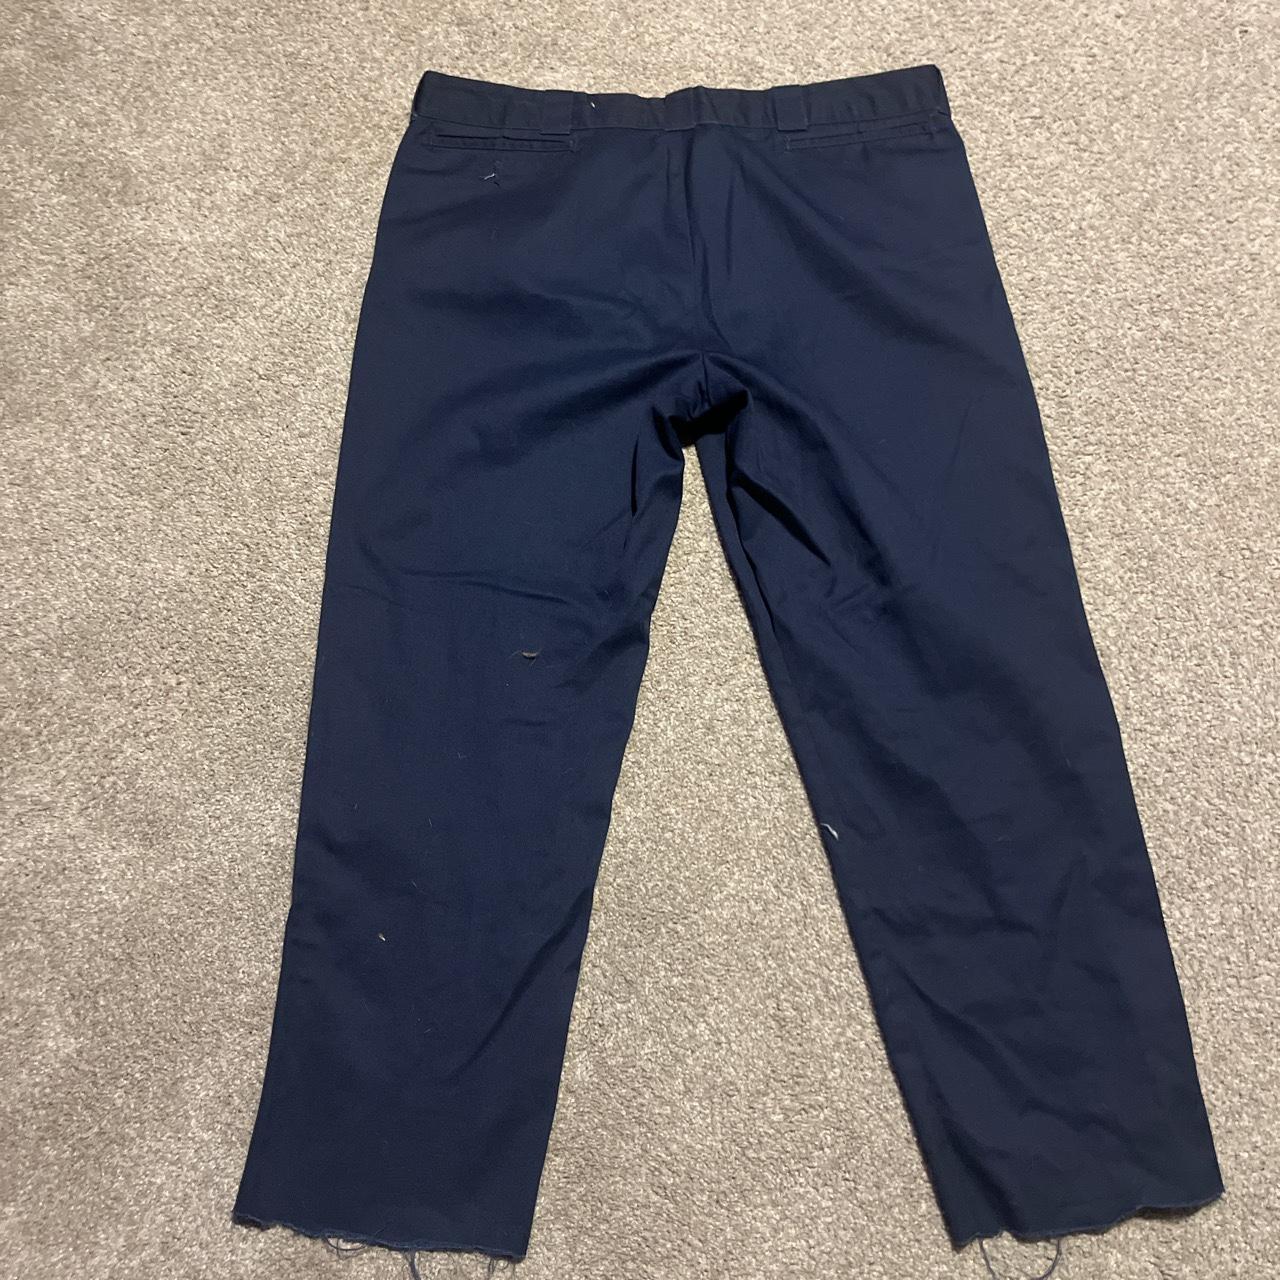 38/32 dickies blue pants - Depop